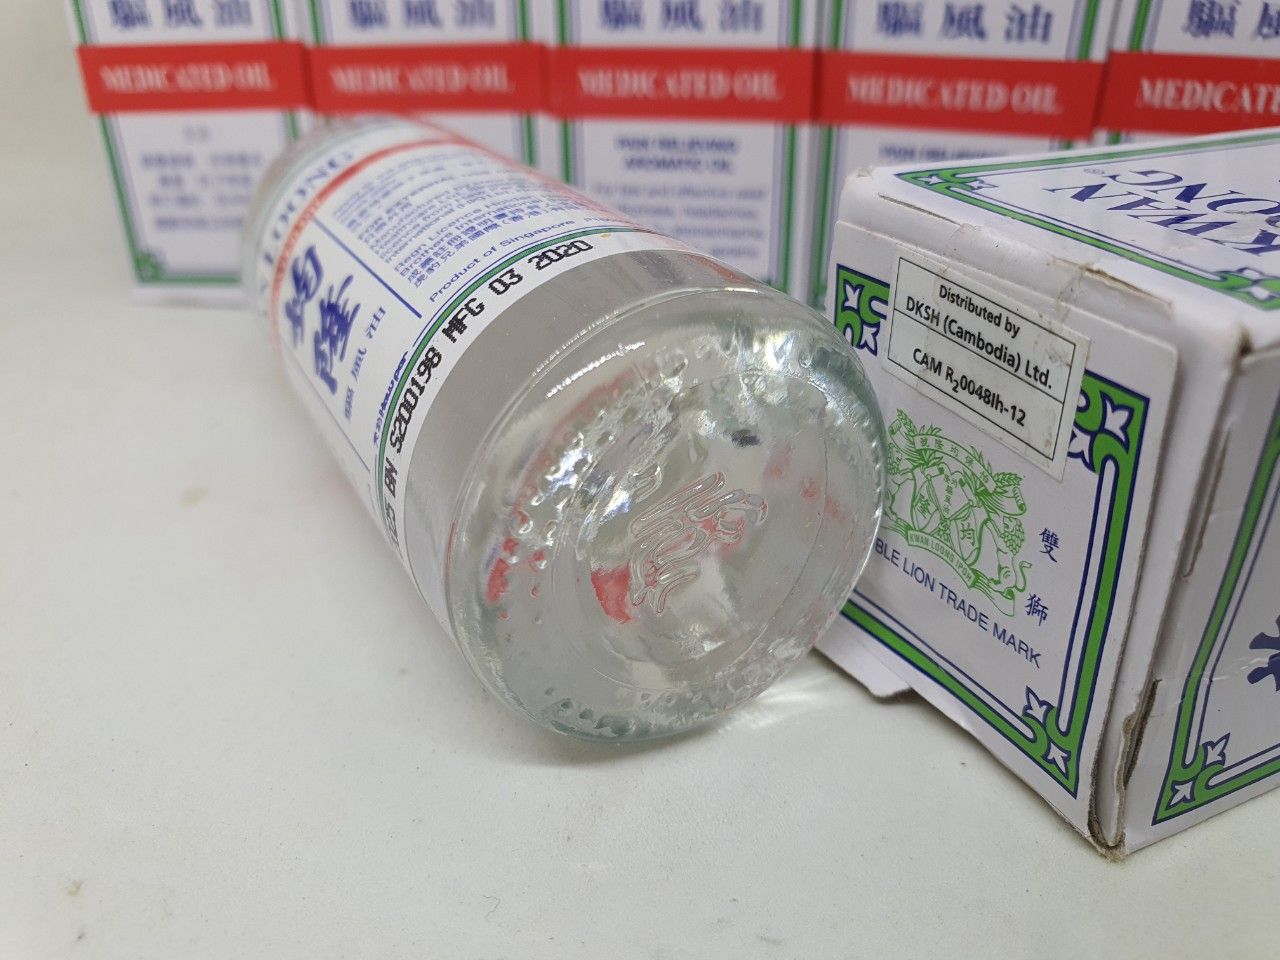  Dầu nóng kwan loong medicated oil dùng xoa bóp nhức mỏi singapore chính hãng 57ml 